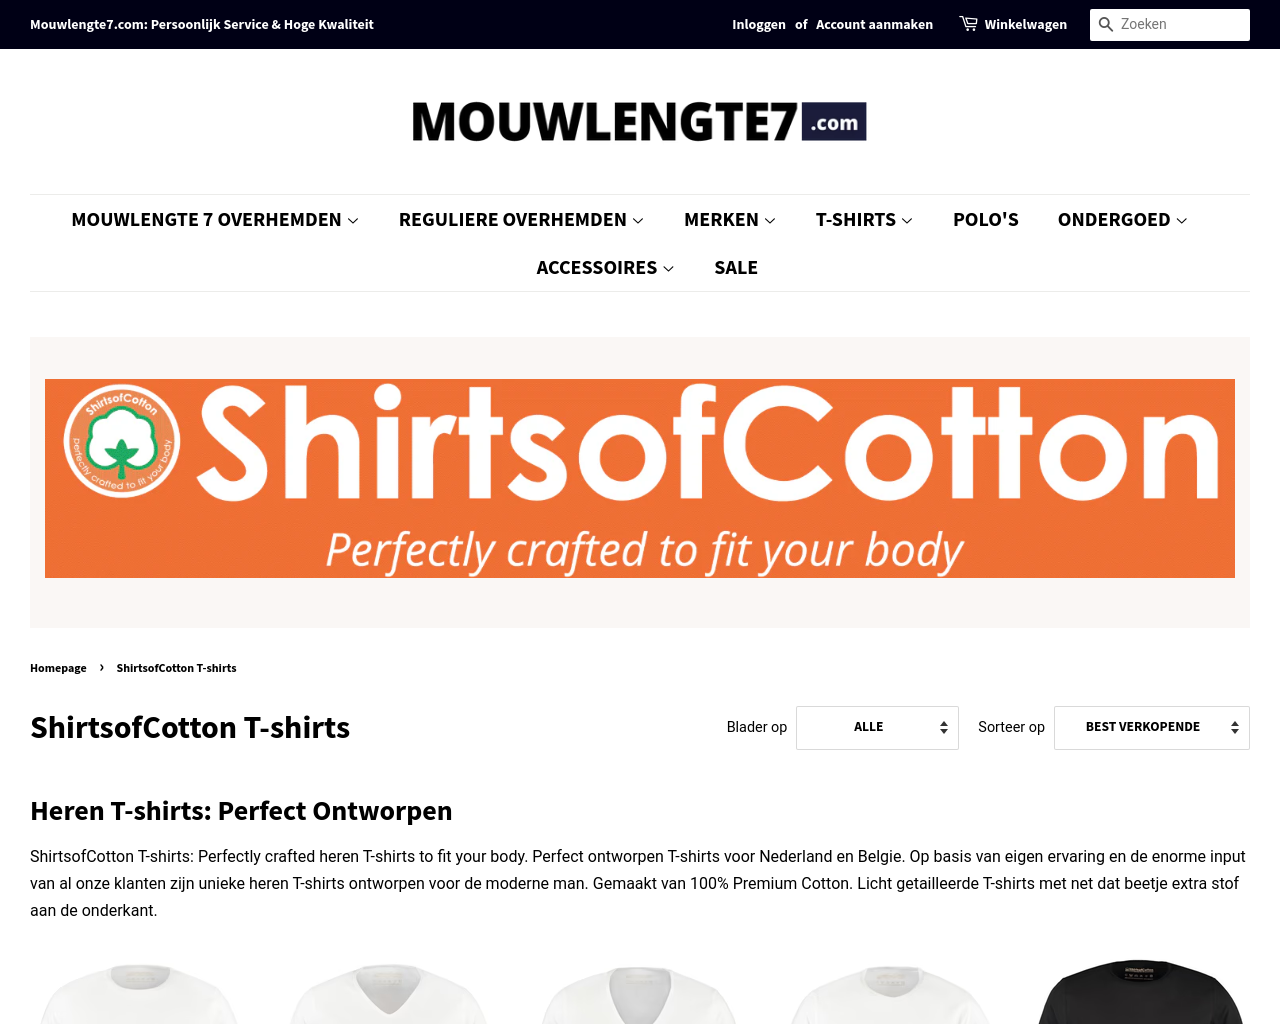 shirtsofcotton.com